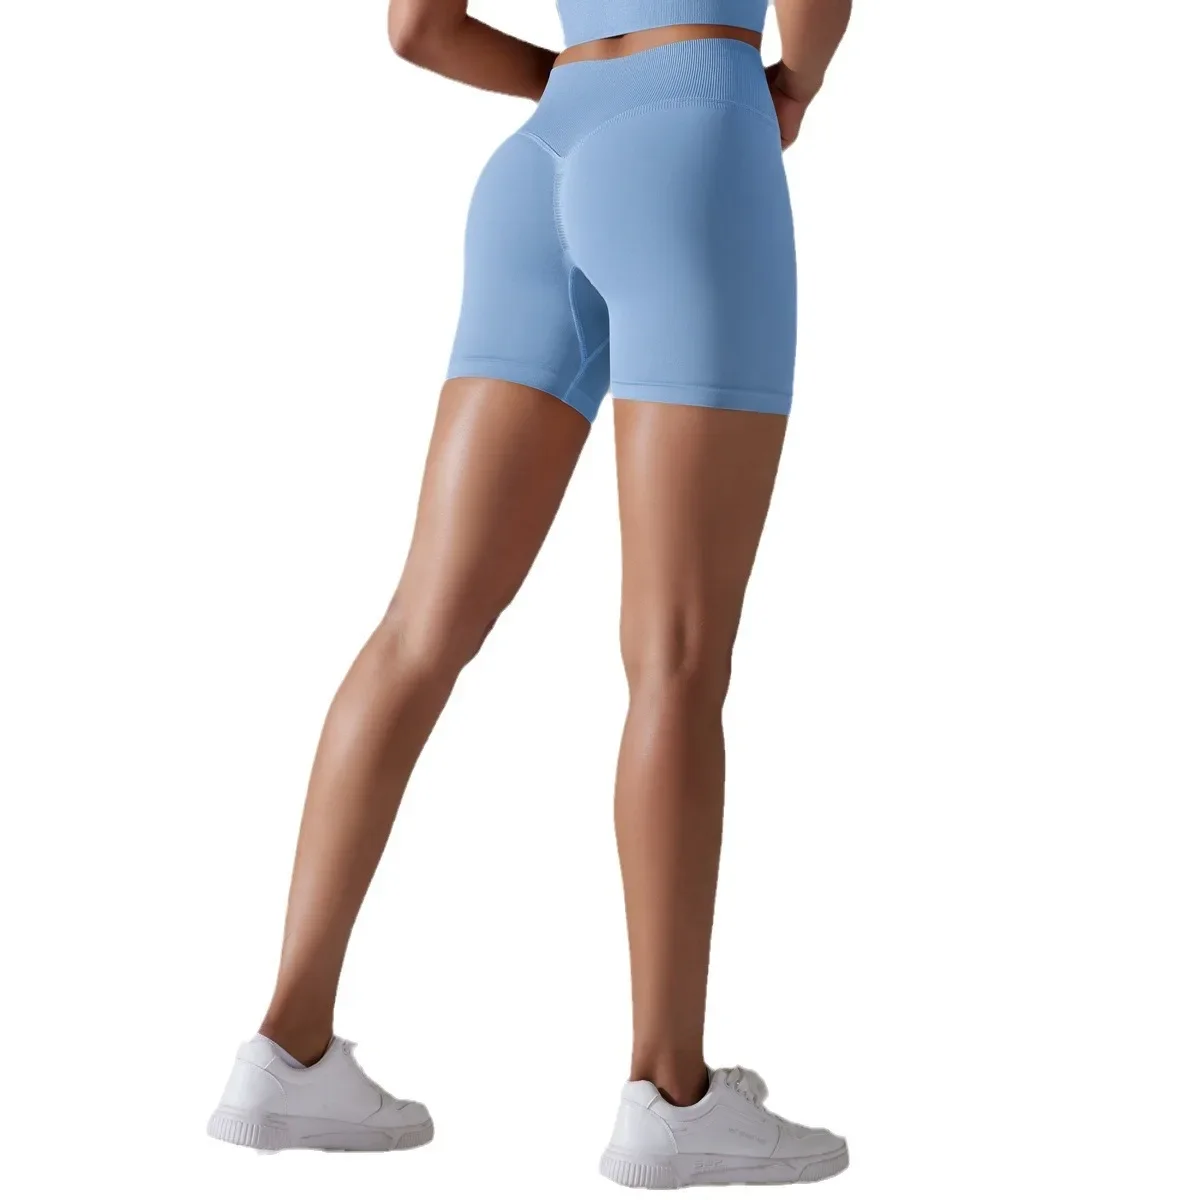 Bezszwowe spodenki do jogi Push Up Scrunch damskie Fitness bieganie sportowe krótkie ubrania gimnastyczne ubrania do ćwiczeń ćwiczenia obcisłe krótkie legginsy